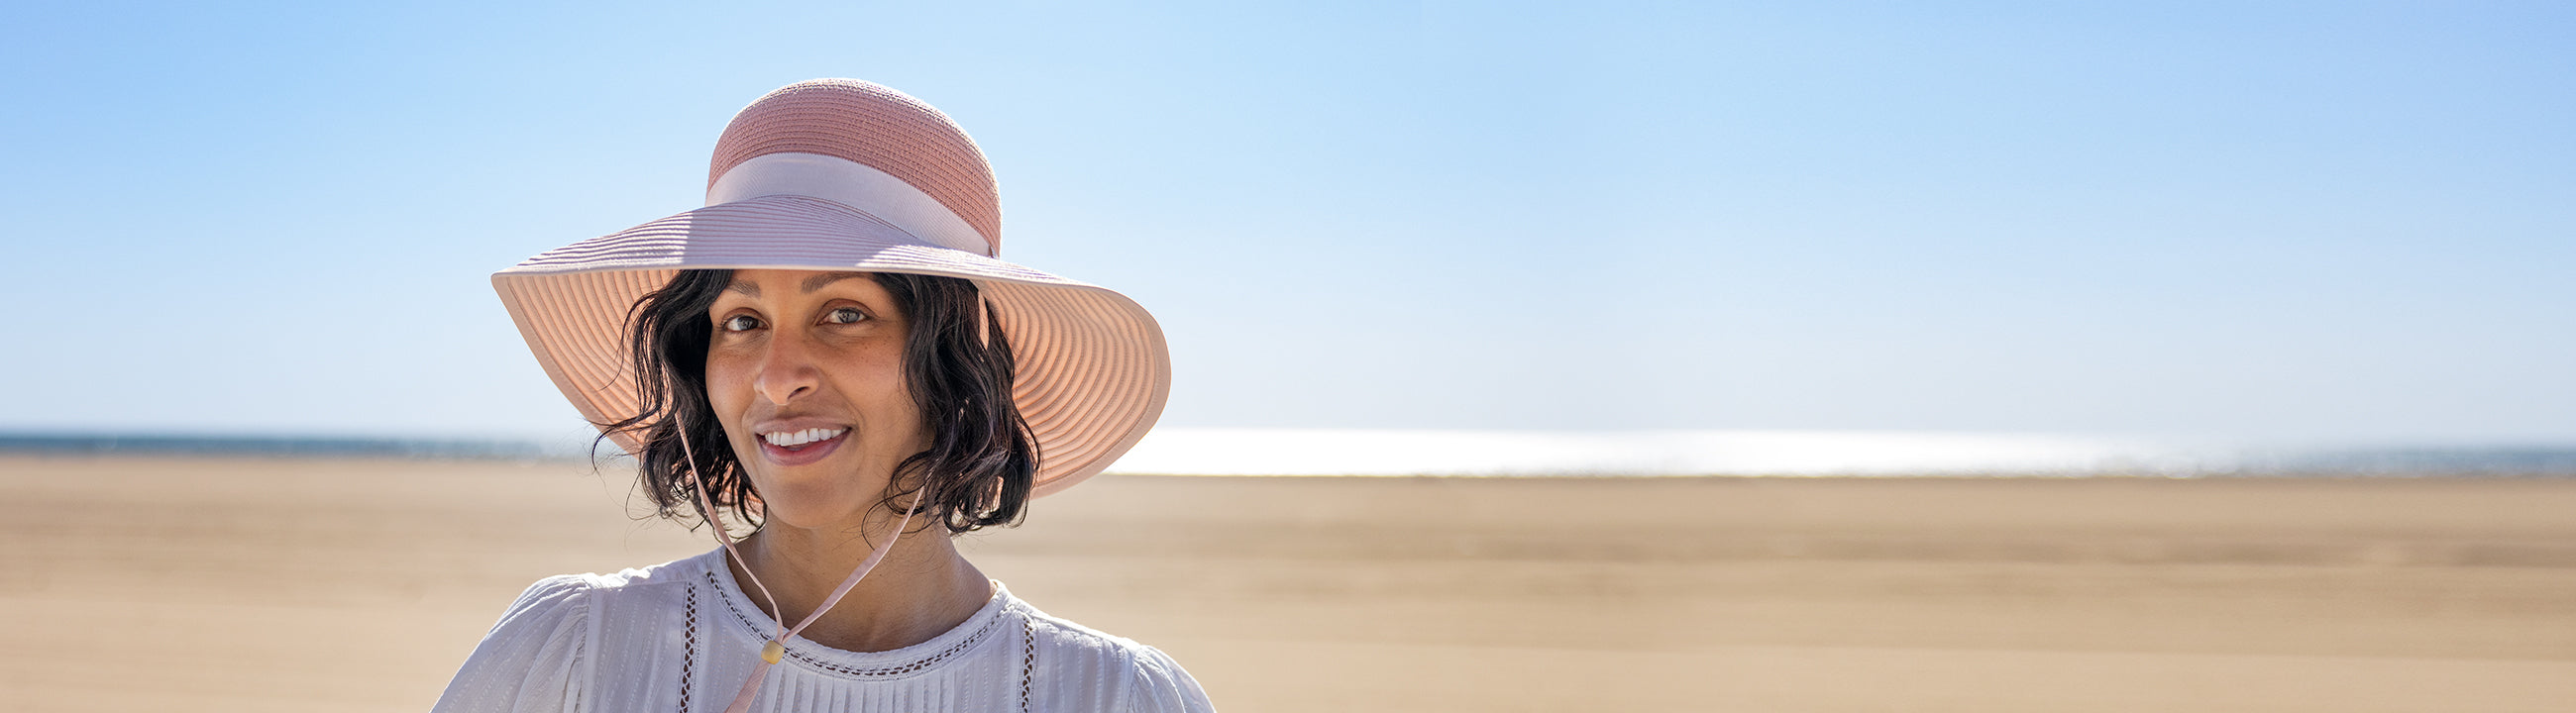 Summer Sun Hats for Women